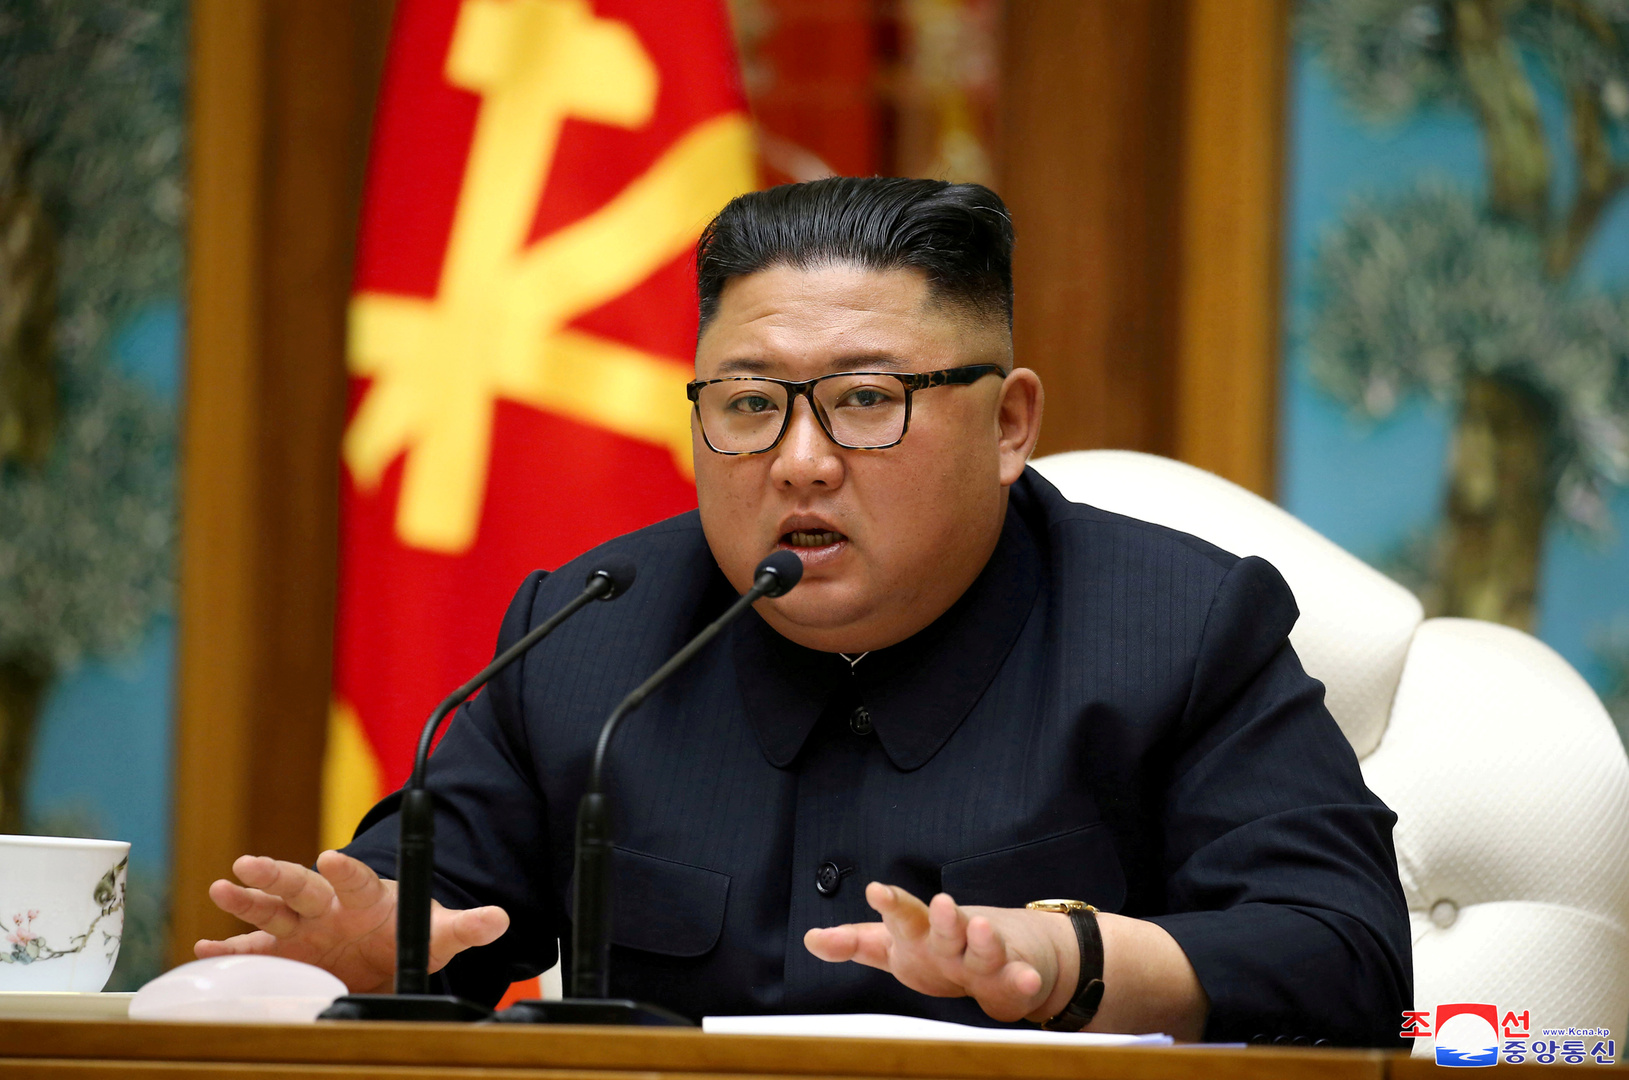 زعيم كوريا الشمالية يظهر علنا لأول مرة منذ 20 يوما